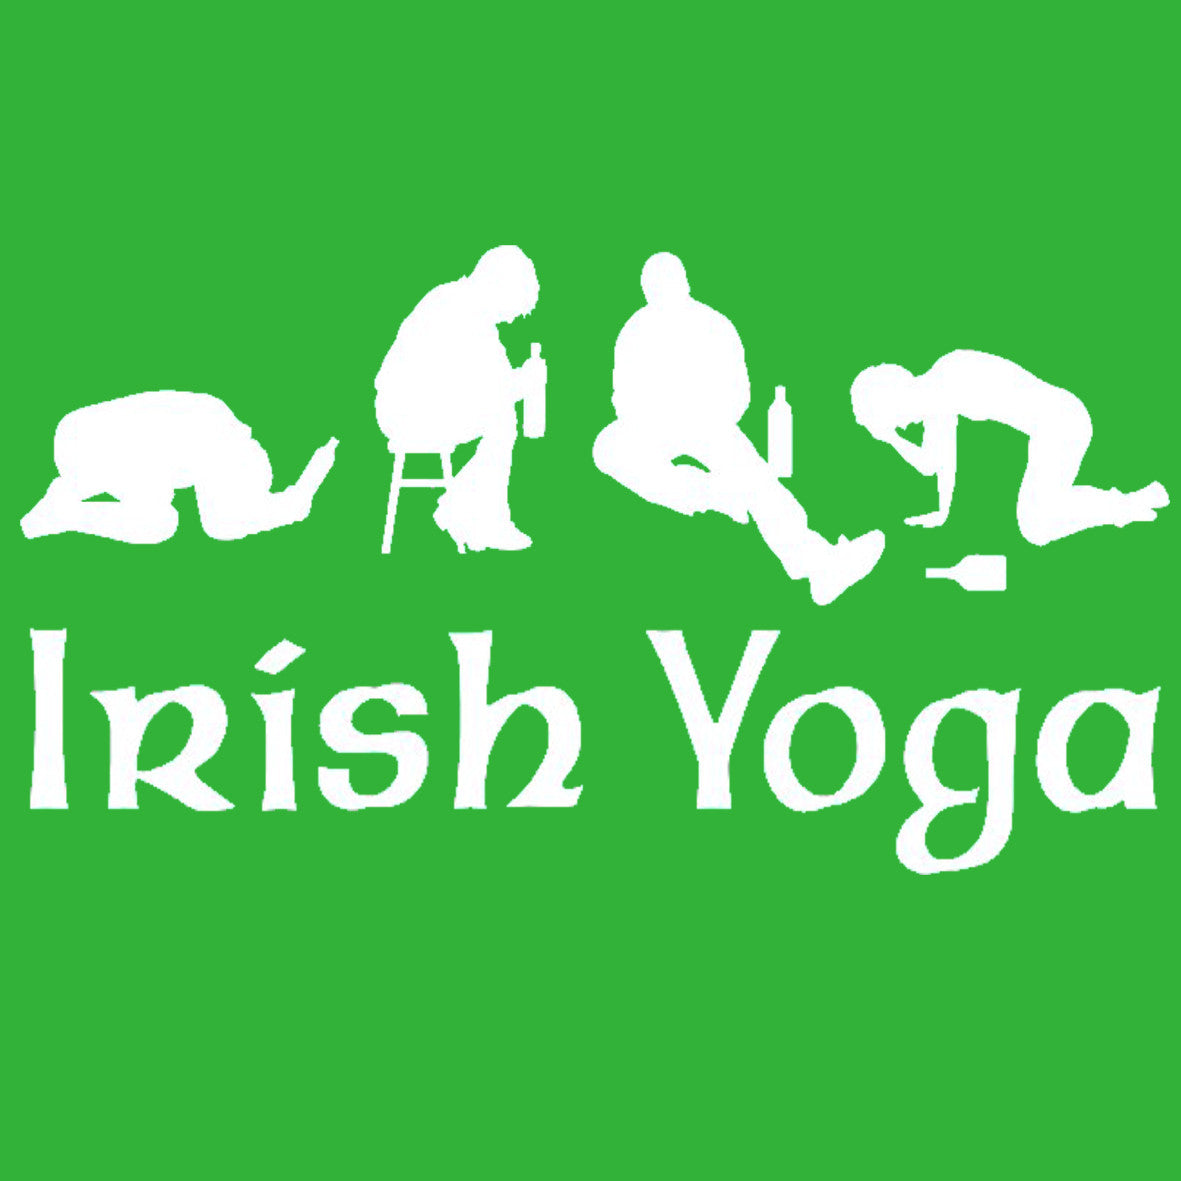 Irish Yoga – CENTRAL T-SHIRTS